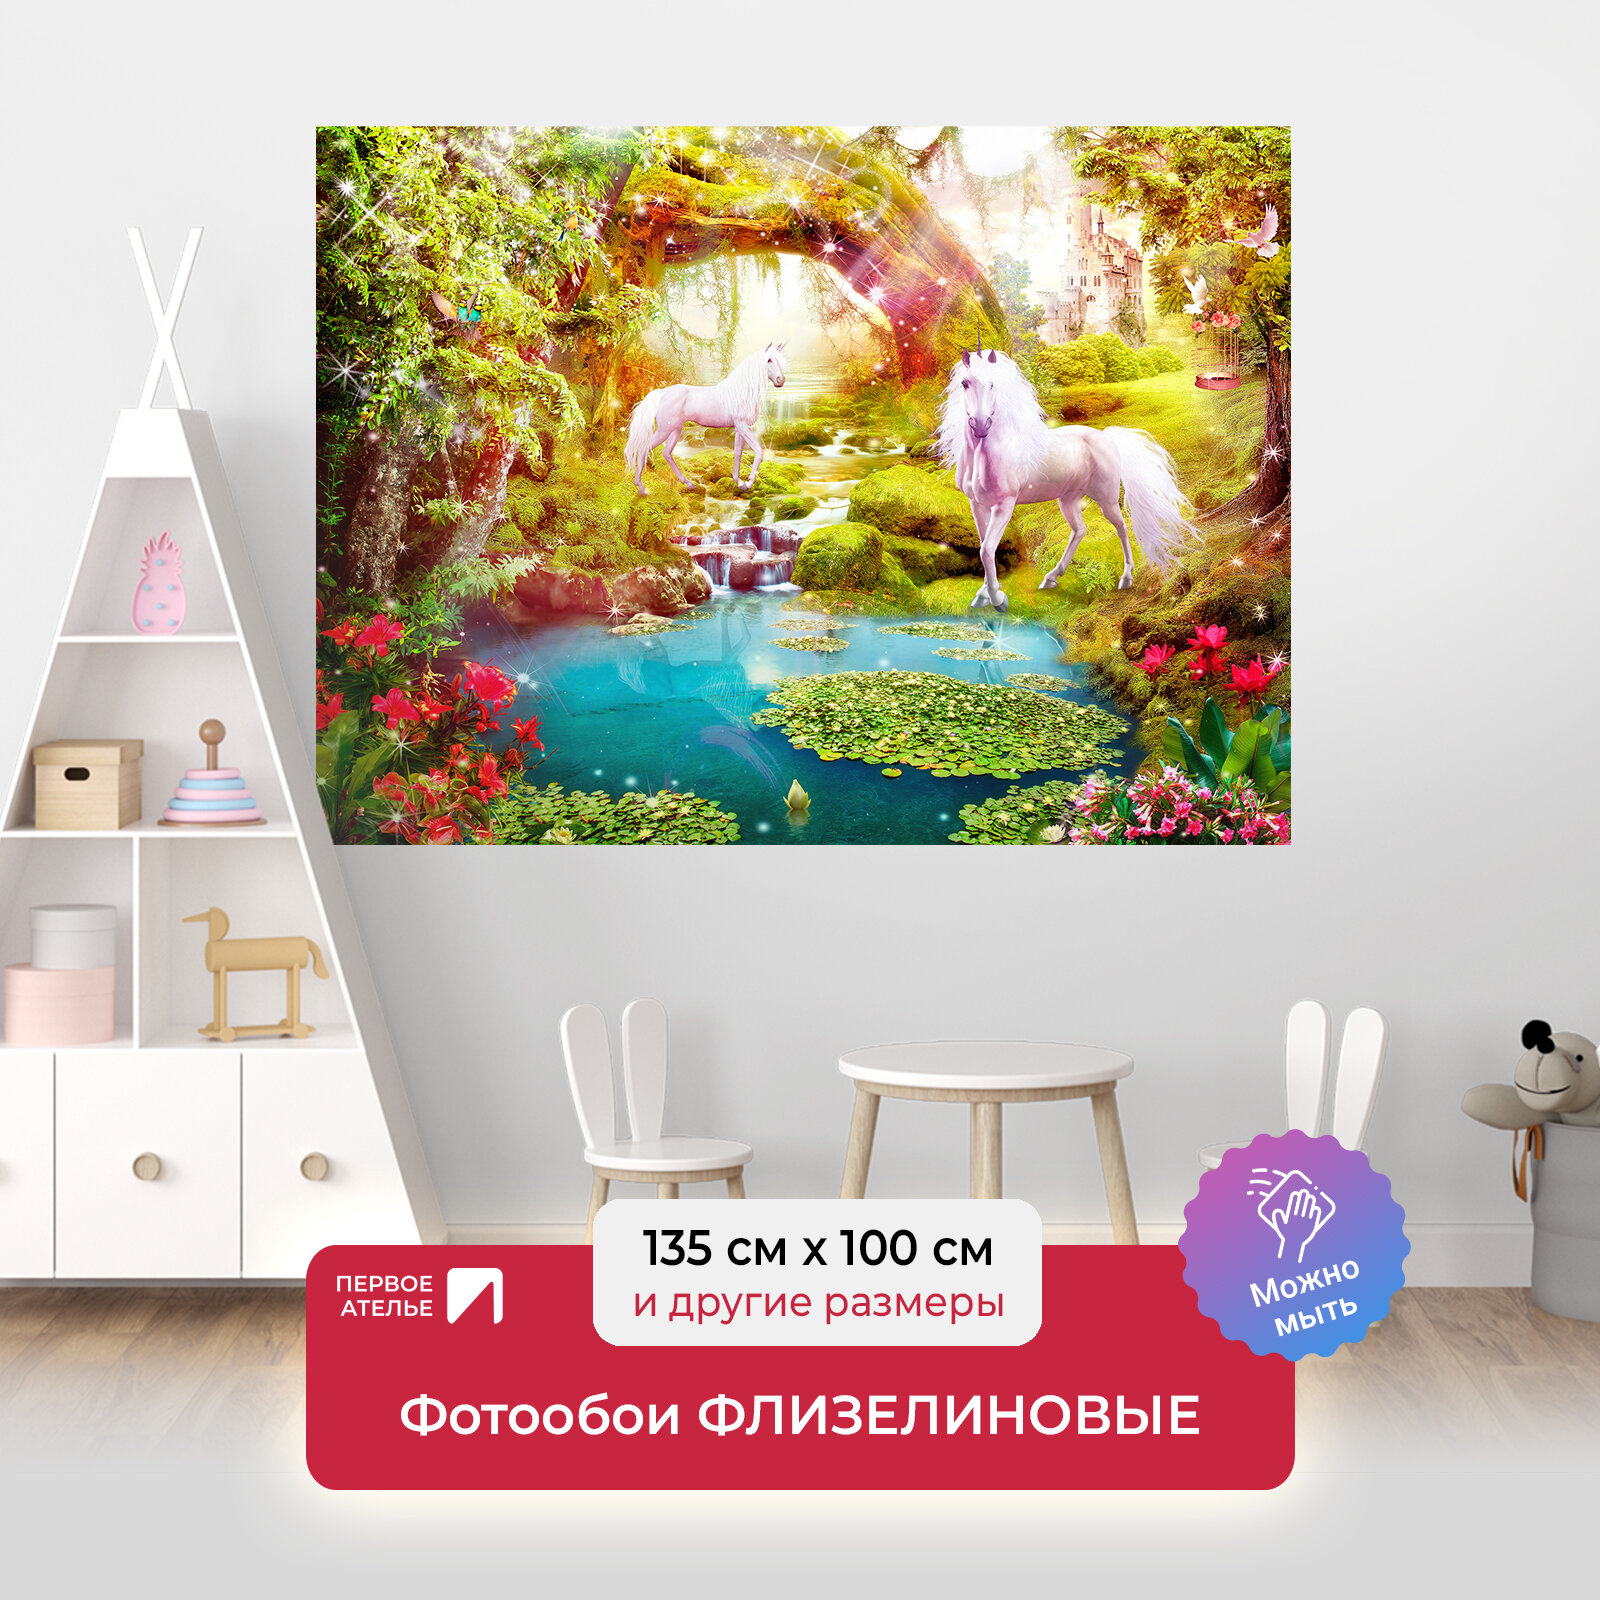 Фотообои на стену детские для девочки первое ателье "Единороги на озере в сказочном лесу" 135х100 см (ШхВ)